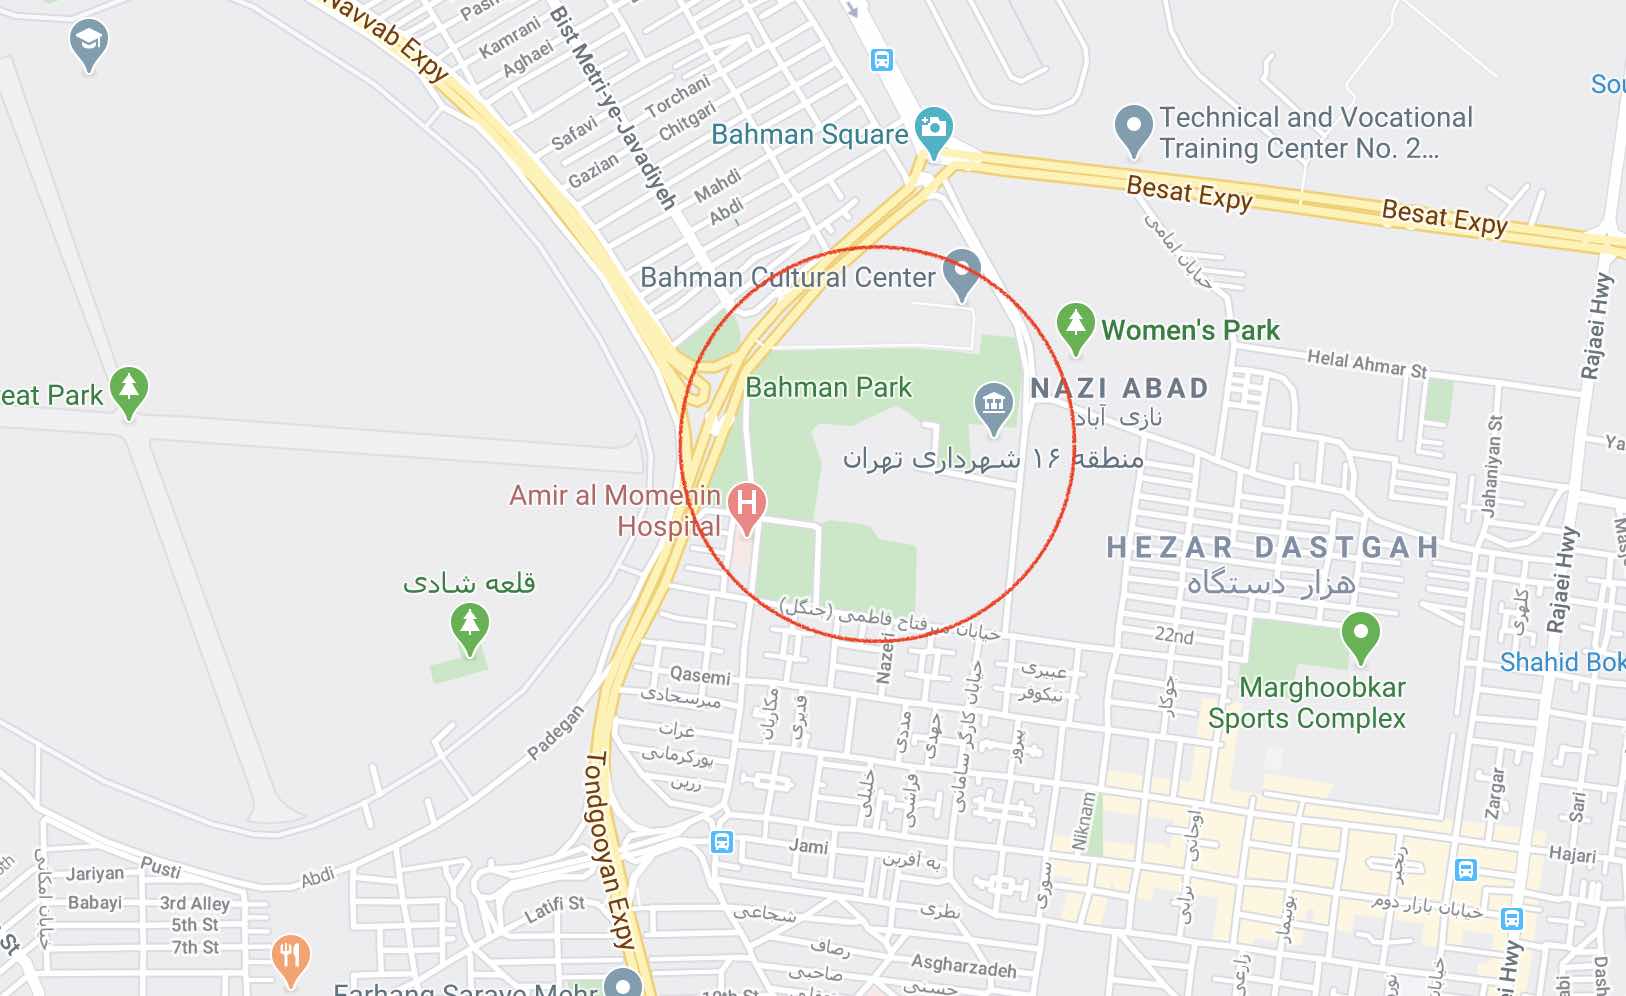 بهترین پارک های تهران (32 پارک) + آدرس و نقشه گوگل عمومی